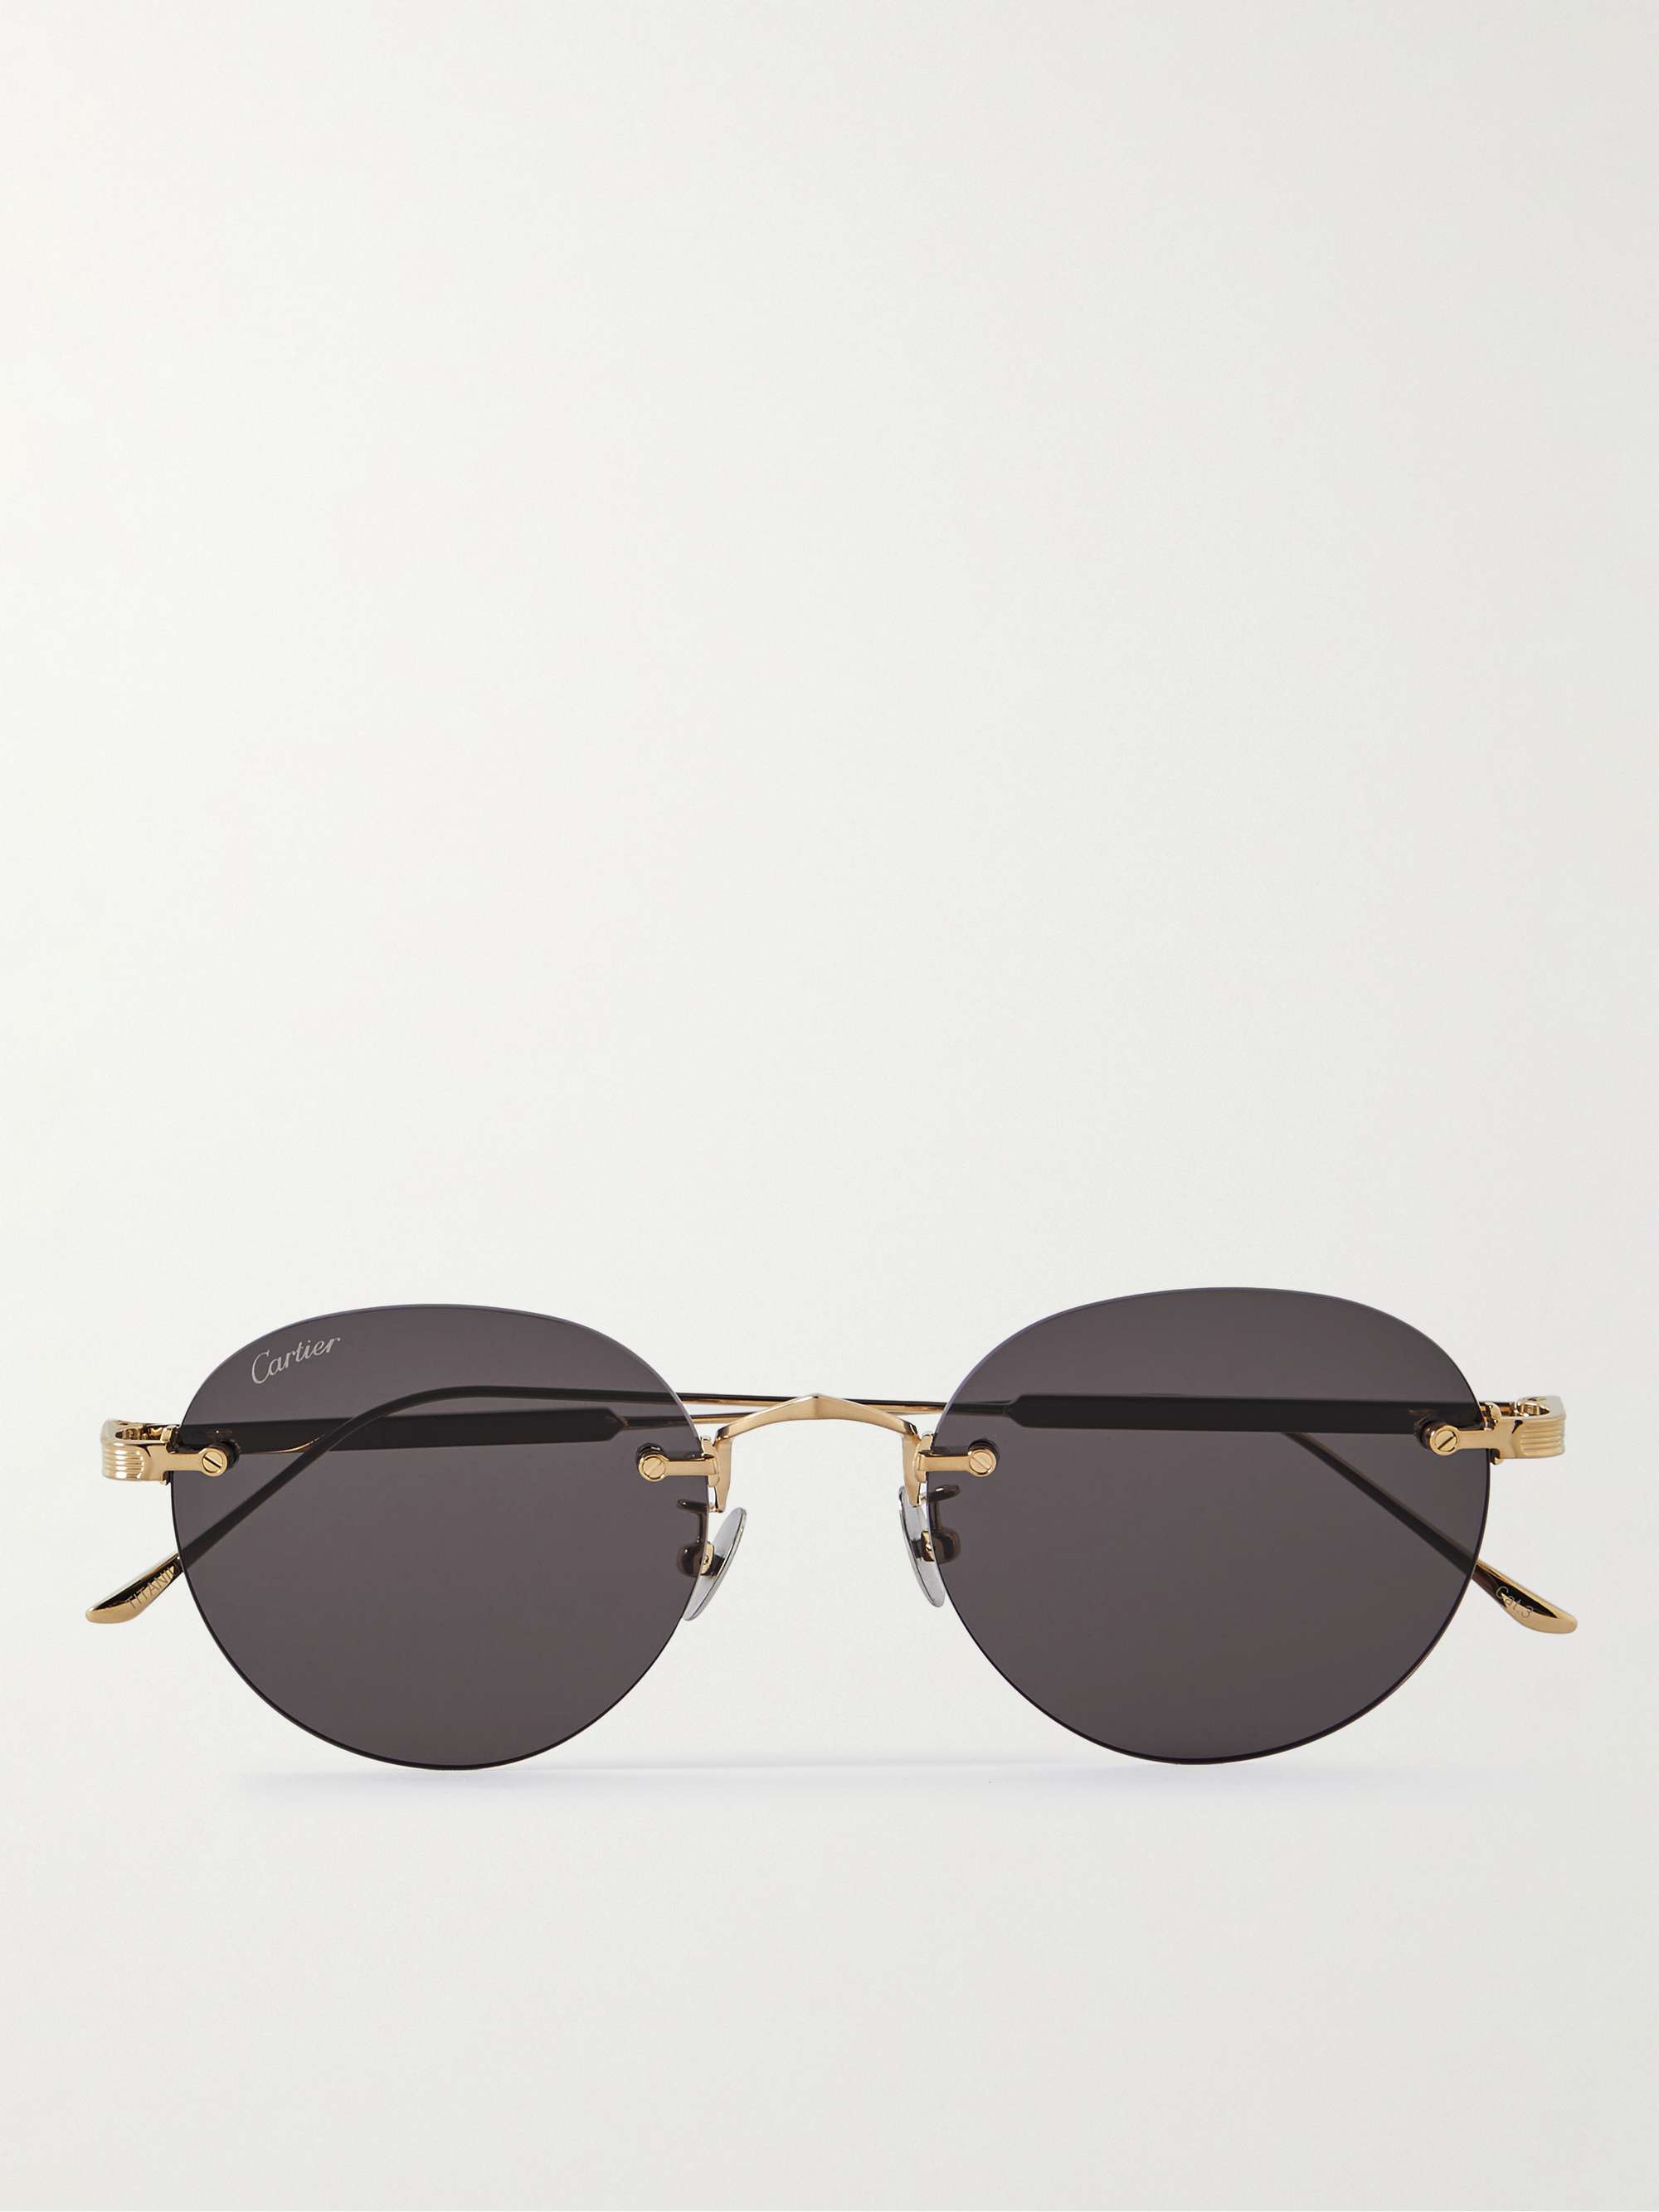 CARTIER EYEWEAR Frameless Gold-Tone Sunglasses for Men | MR PORTER